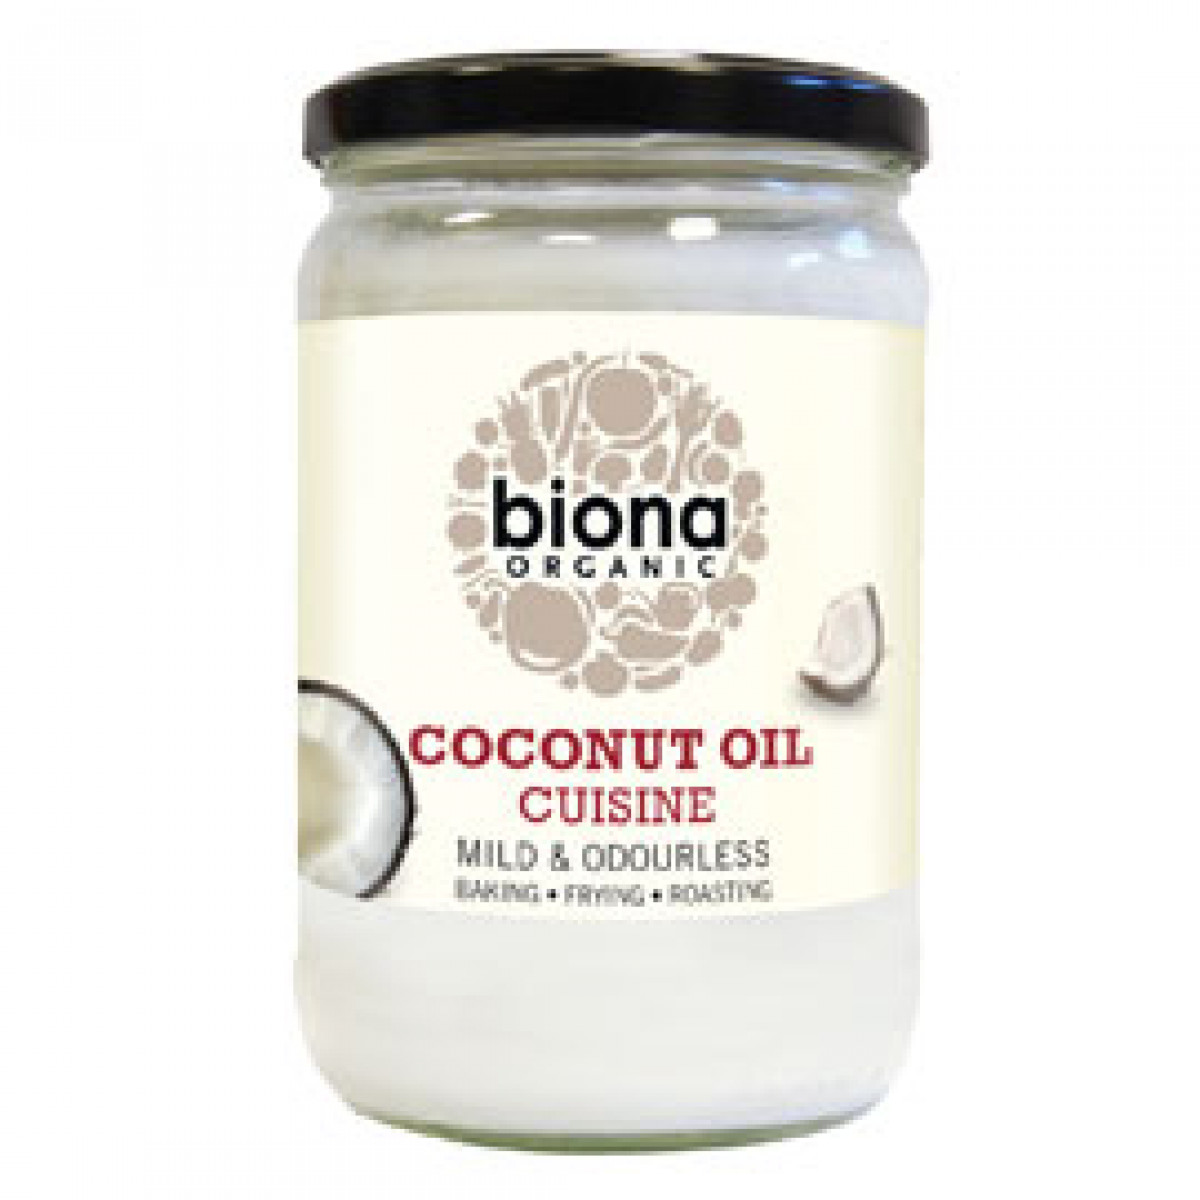 Product picture for Coconut Oil Cuisine - Deodorised